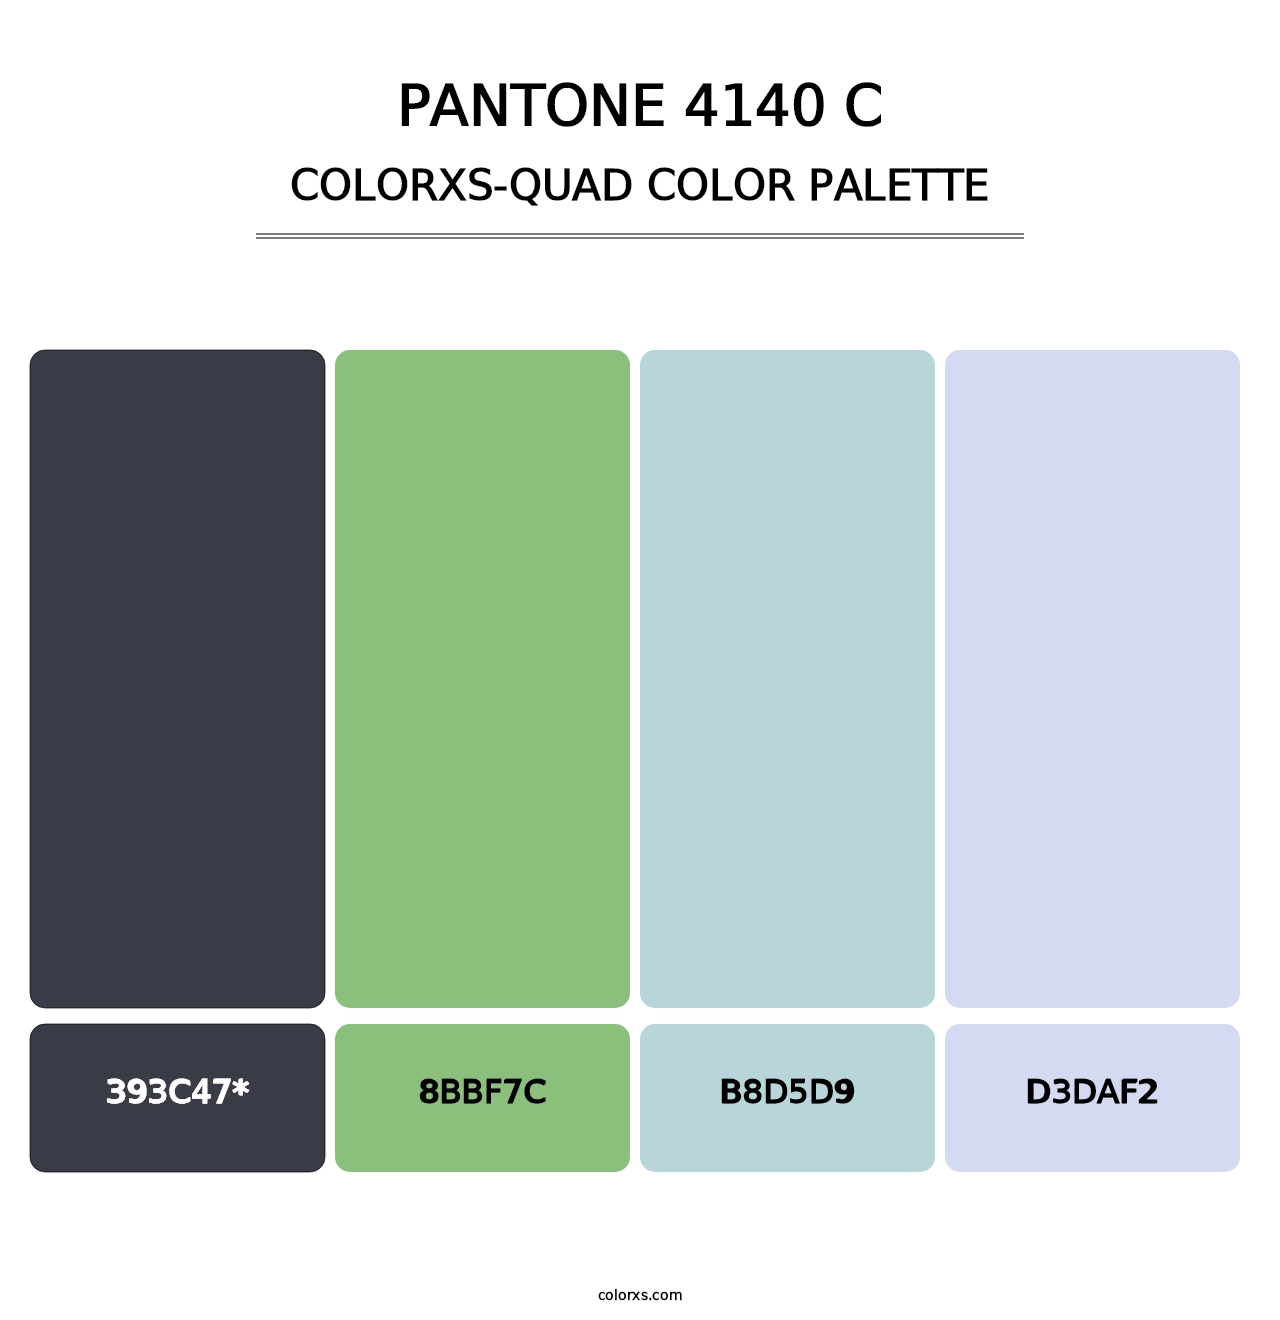 PANTONE 4140 C - Colorxs Quad Palette